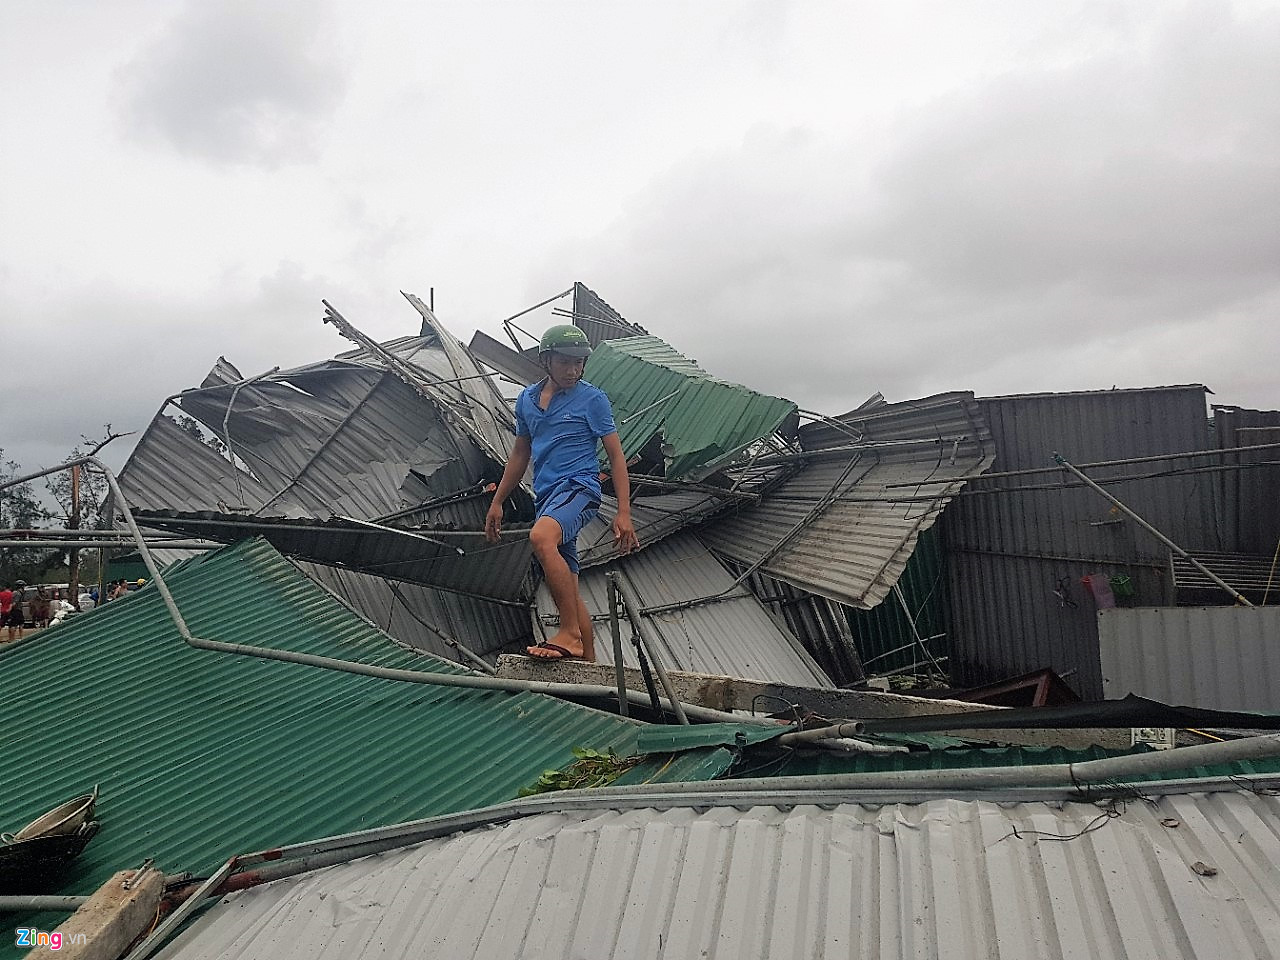 Cơn bão số 10 làm tốc nhiều ngôi nhà, thiệt hại nặng nề ở các tỉnh miền Trung